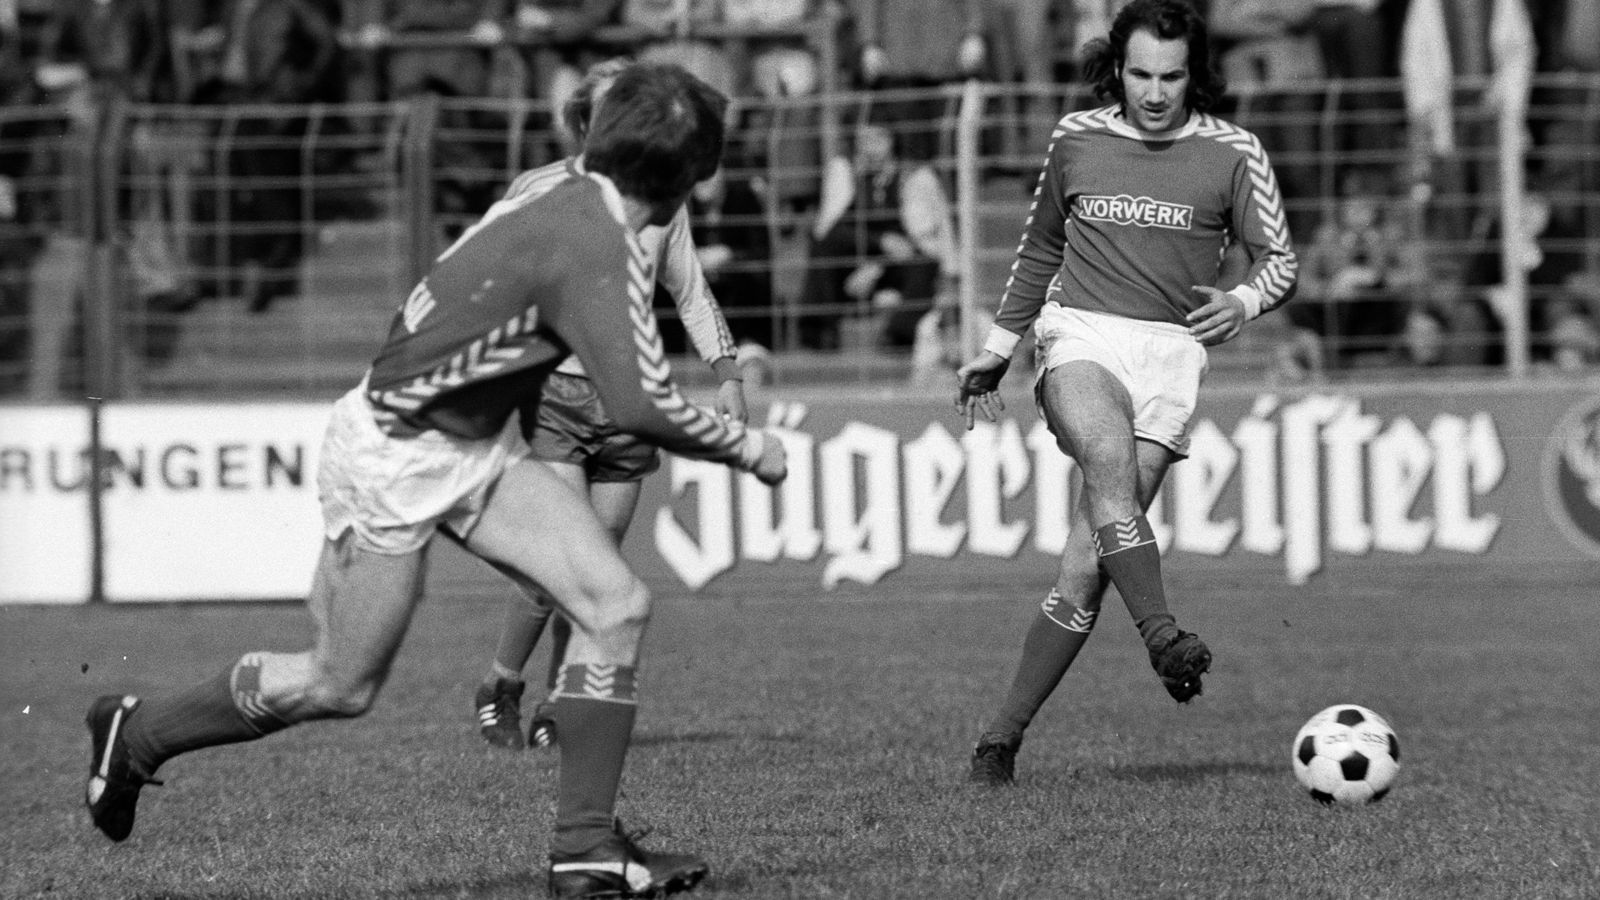 
                <strong>Platz 2 - Wuppertaler SV (1974/75, 14 Punkte, 32:86 Tore)</strong><br>
                Das Highlight der Saison 1974/75 fand für die Wuppertaler am 5. Spieltag statt. Da besiegten die Kicker aus dem Bergischen Land die frischgebackenen Weltmeister des FC Bayern um Uli Hoeneß  mit 3:1. Danach holte der WSV aber nur noch einen weiteren Sieg. Kein Wunder also, dass Wuppertal in der Tabelle nie besser dastand, als nach dem Coup gegen die Münchner (Platz 10). Vom 23. Spieltag an hatte das Team rund um Theodor Homann (v.) sogar durchgehend bis zum 34. Spieltag die Rote Laterne in den Händen. Besonders bitter: In der gesamten Rückrunde gewann Wuppertal kein einziges Bundesliga-Spiel mehr und stieg sang- und klanglos ab.
              